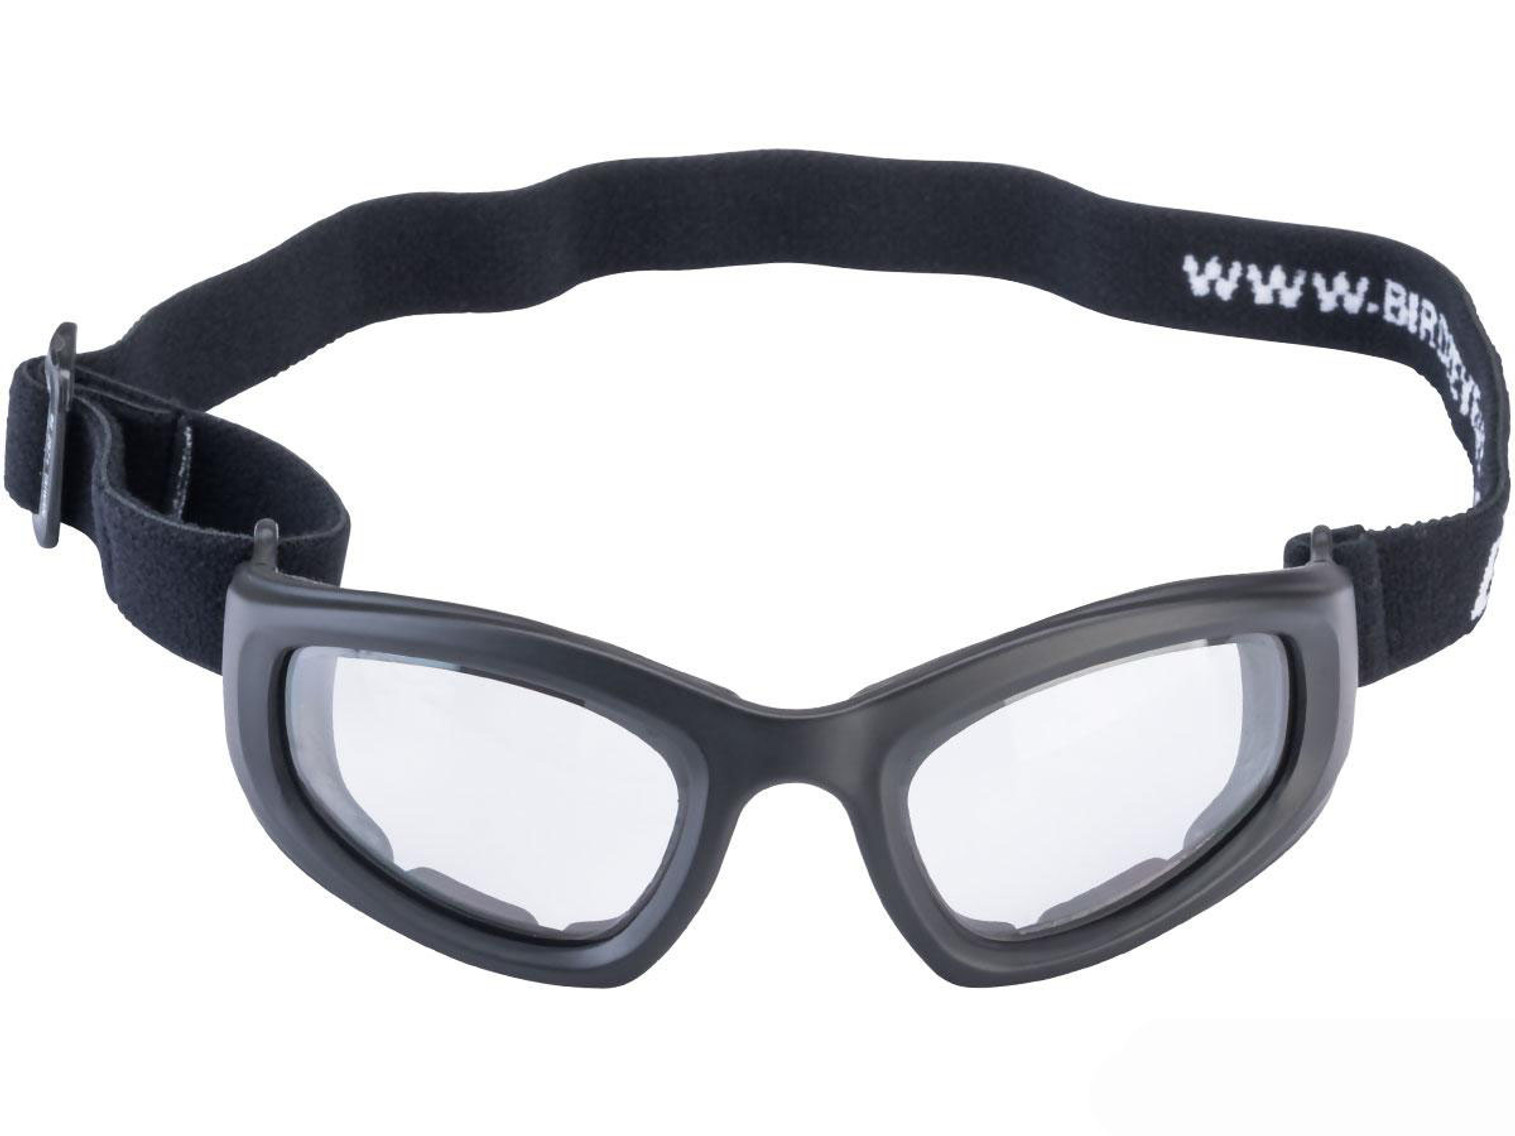 Birdz Eyewear Soar ANSI Z87.1 Goggles